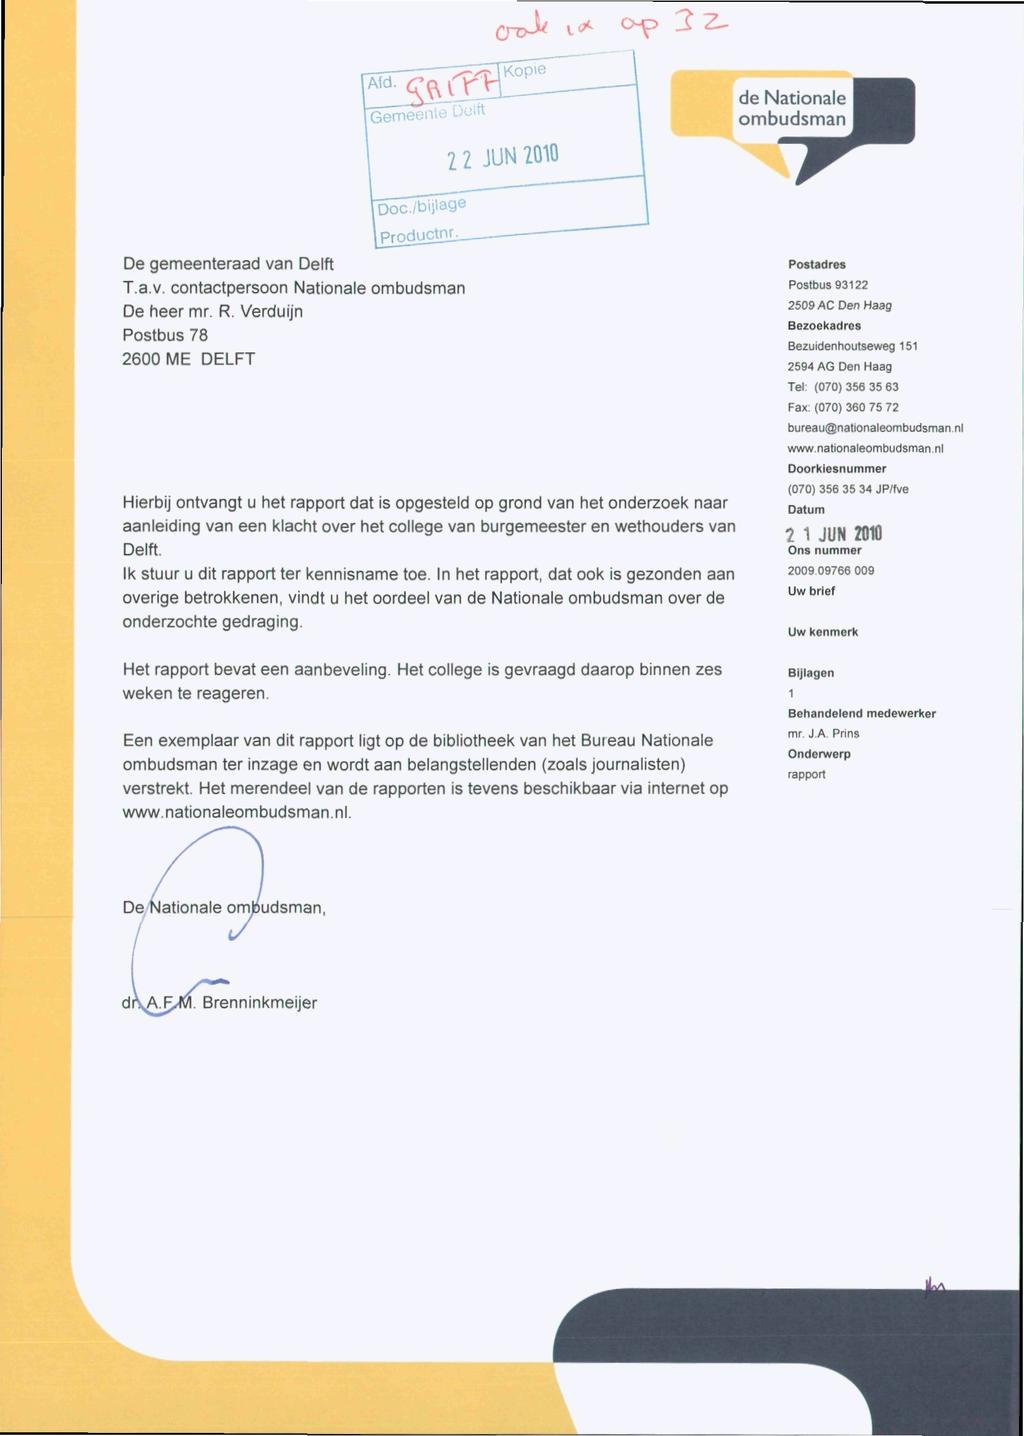 Q-p}/ t*c op 2 2^ ^Gemeen de Nationale ombudsman 2 2 JUN 2010 Doc/bijlage productnr. De gemeenteraad van Delft T.a.v. contactpersoon Nationale ombudsman De heer mr. R.